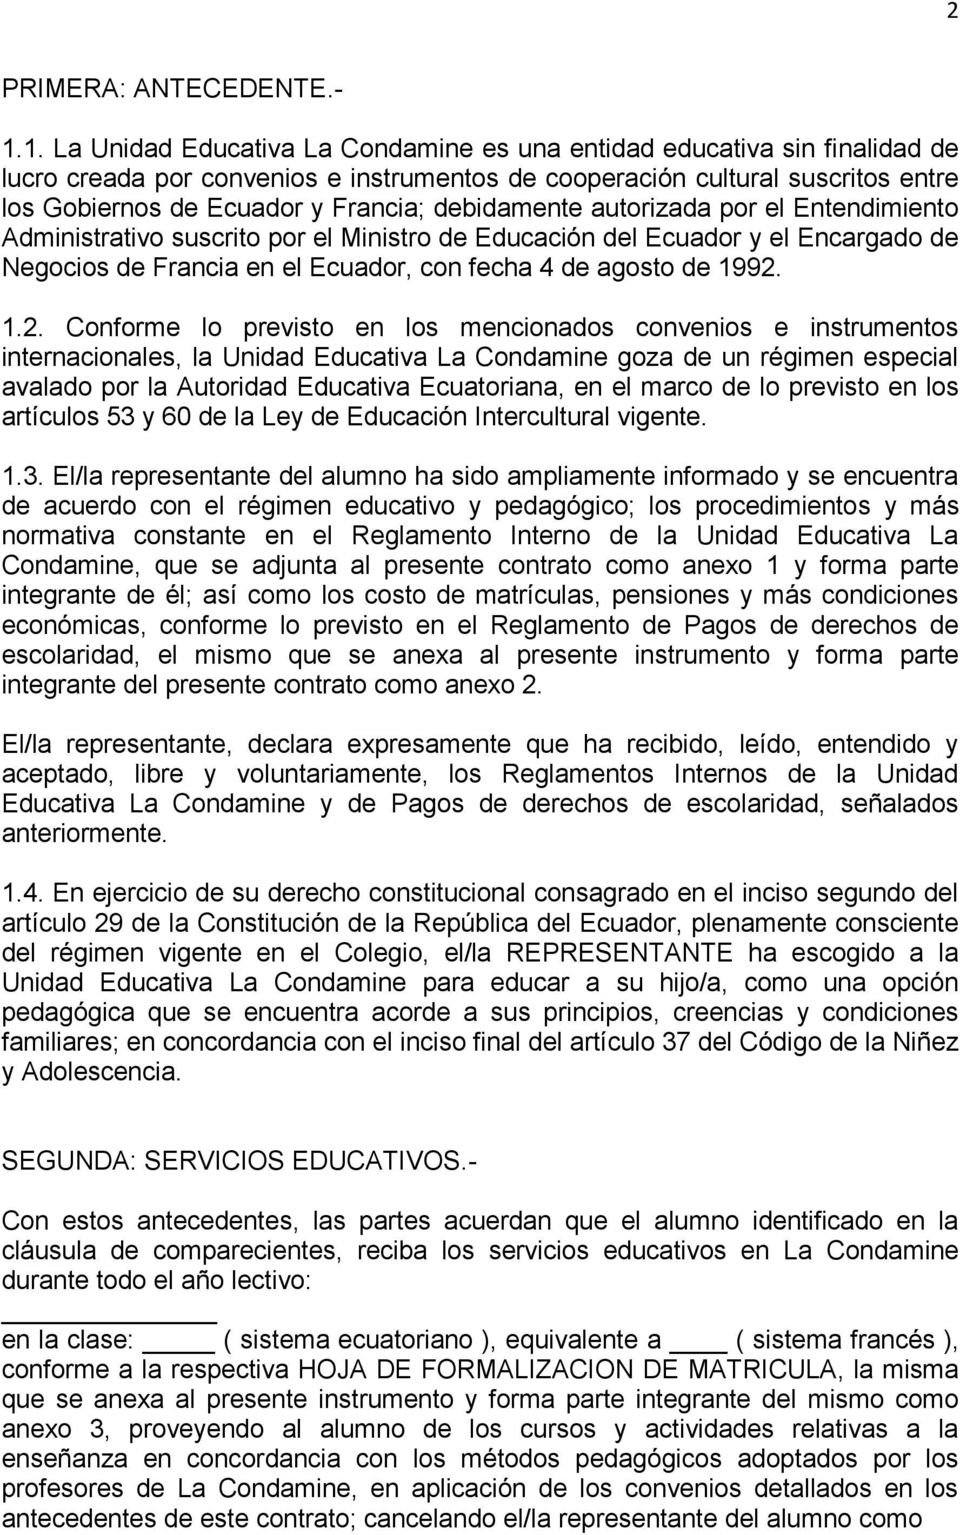 debidamente autorizada por el Entendimiento Administrativo suscrito por el Ministro de Educación del Ecuador y el Encargado de Negocios de Francia en el Ecuador, con fecha 4 de agosto de 1992.